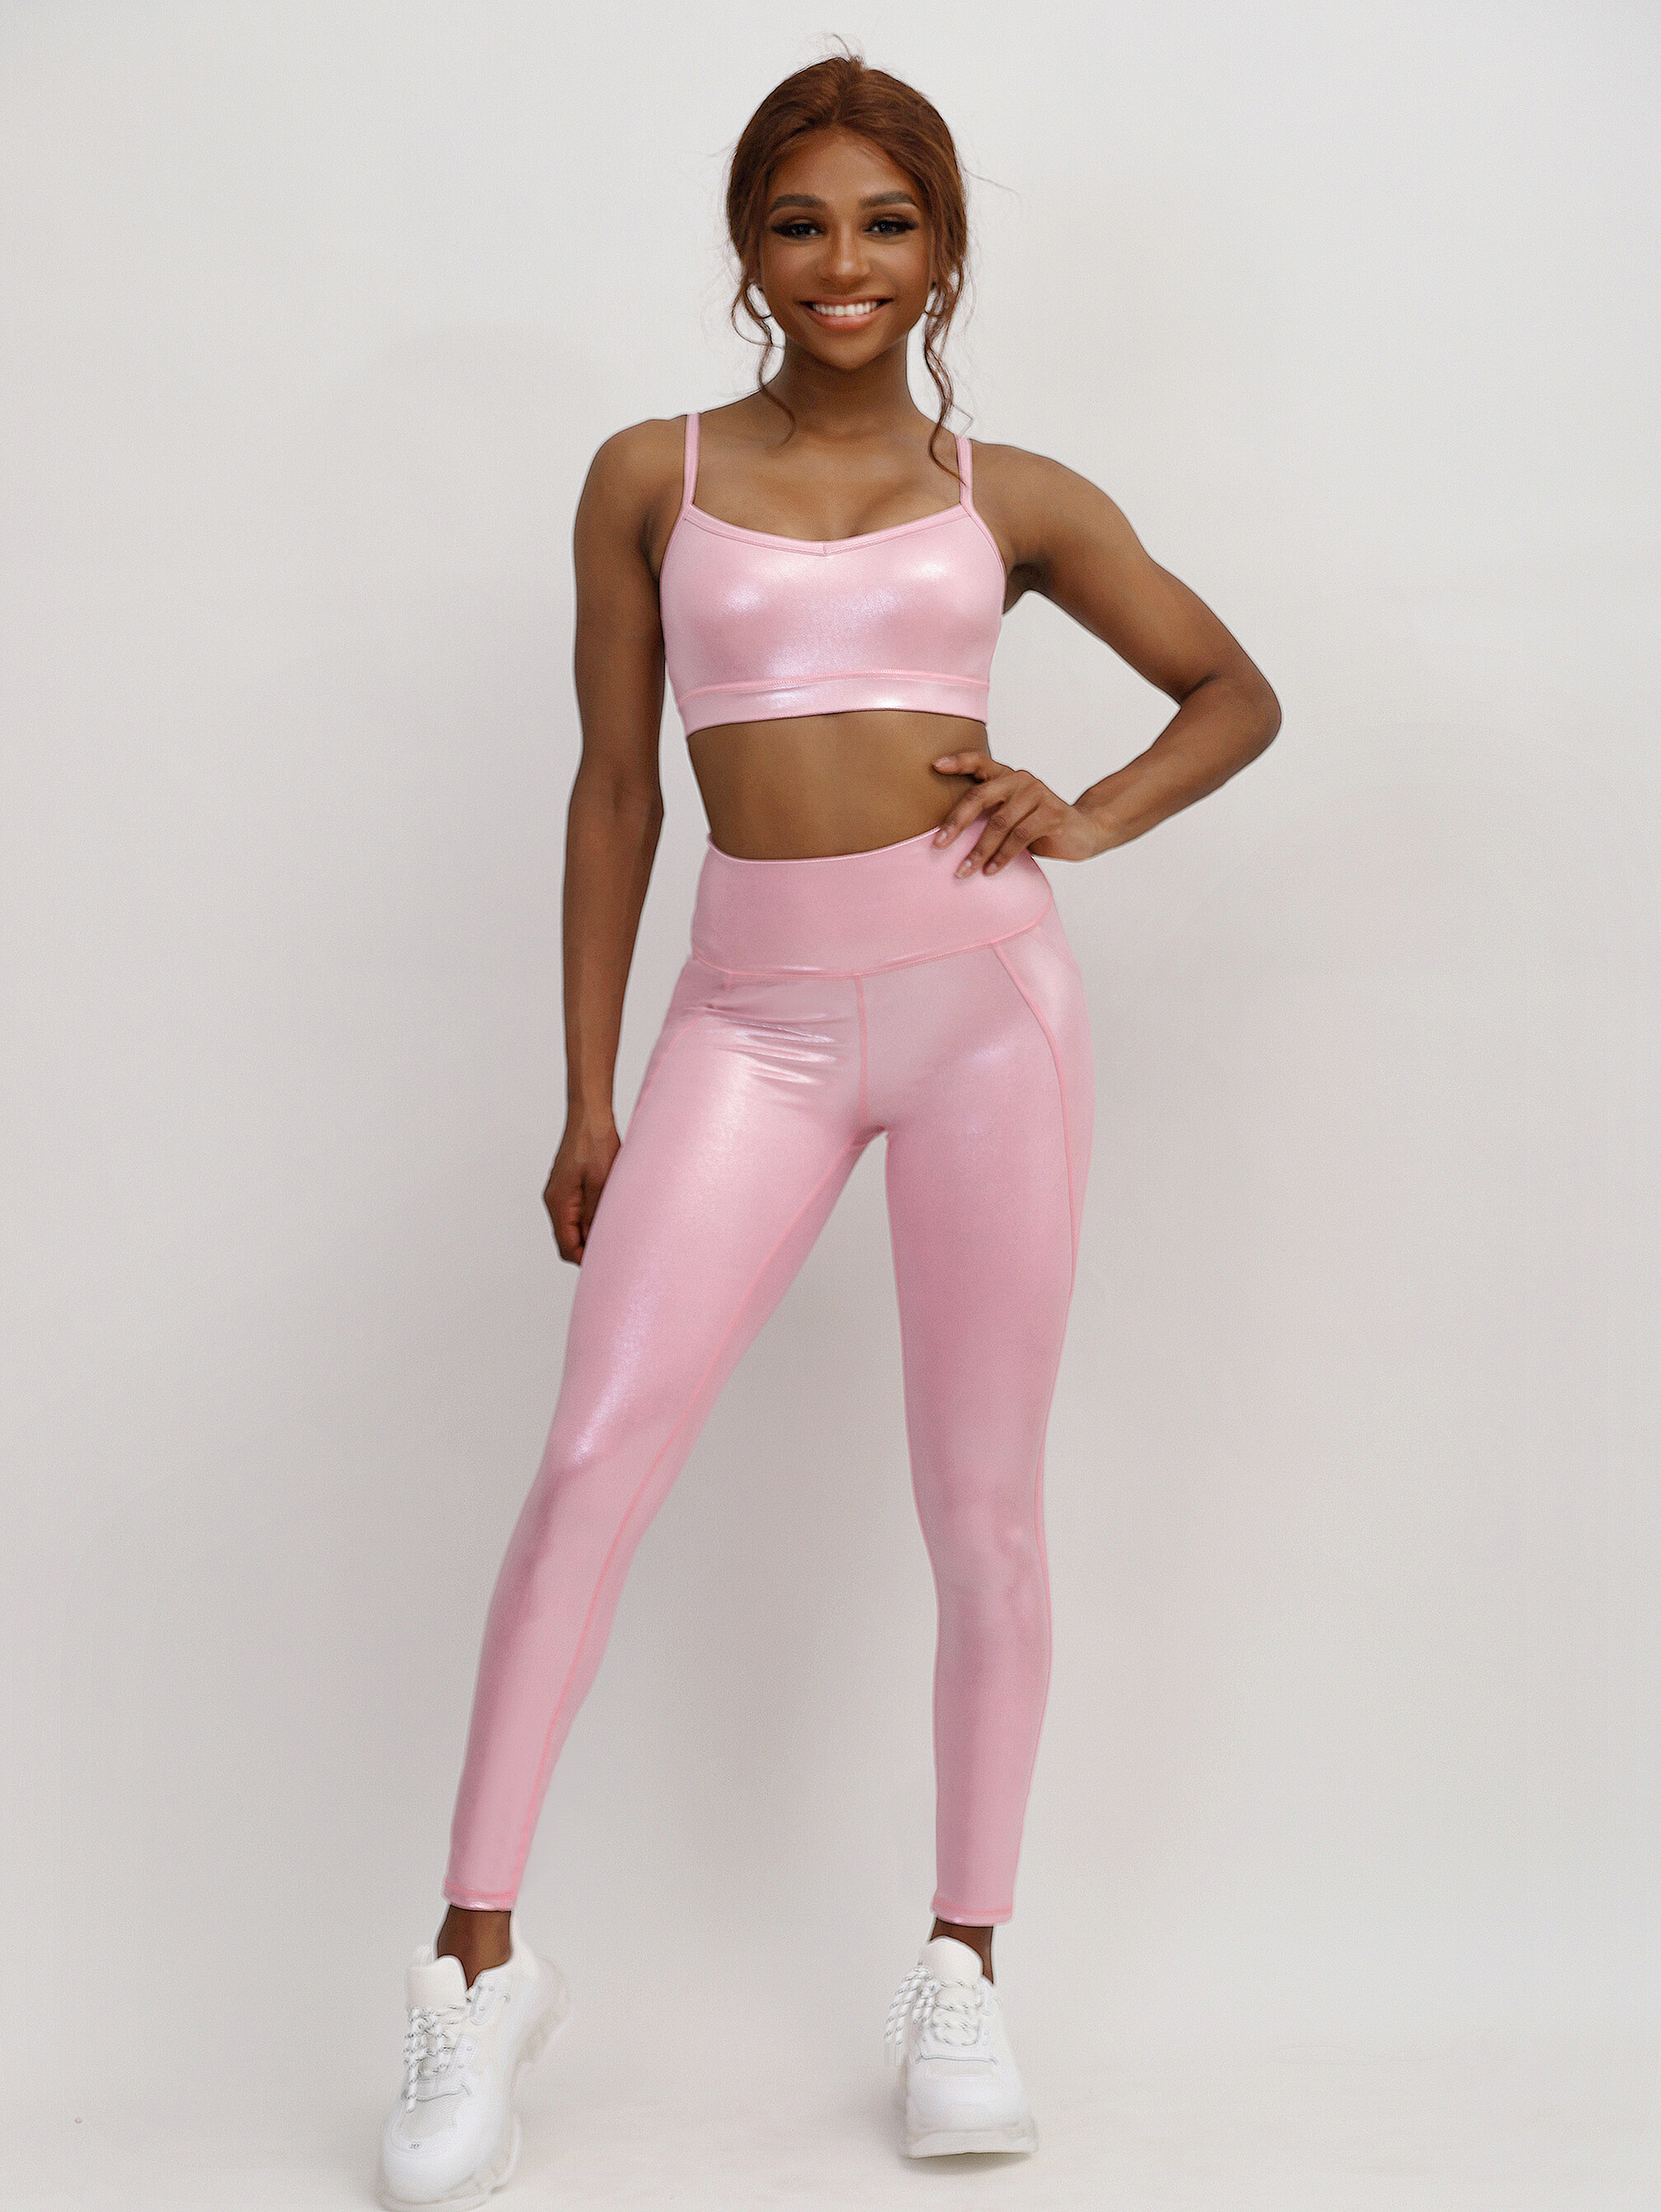 high waist thin strap active wear  supplier, pink shiny active wear  china, with pocket active wear distributor, with pocket active wear company